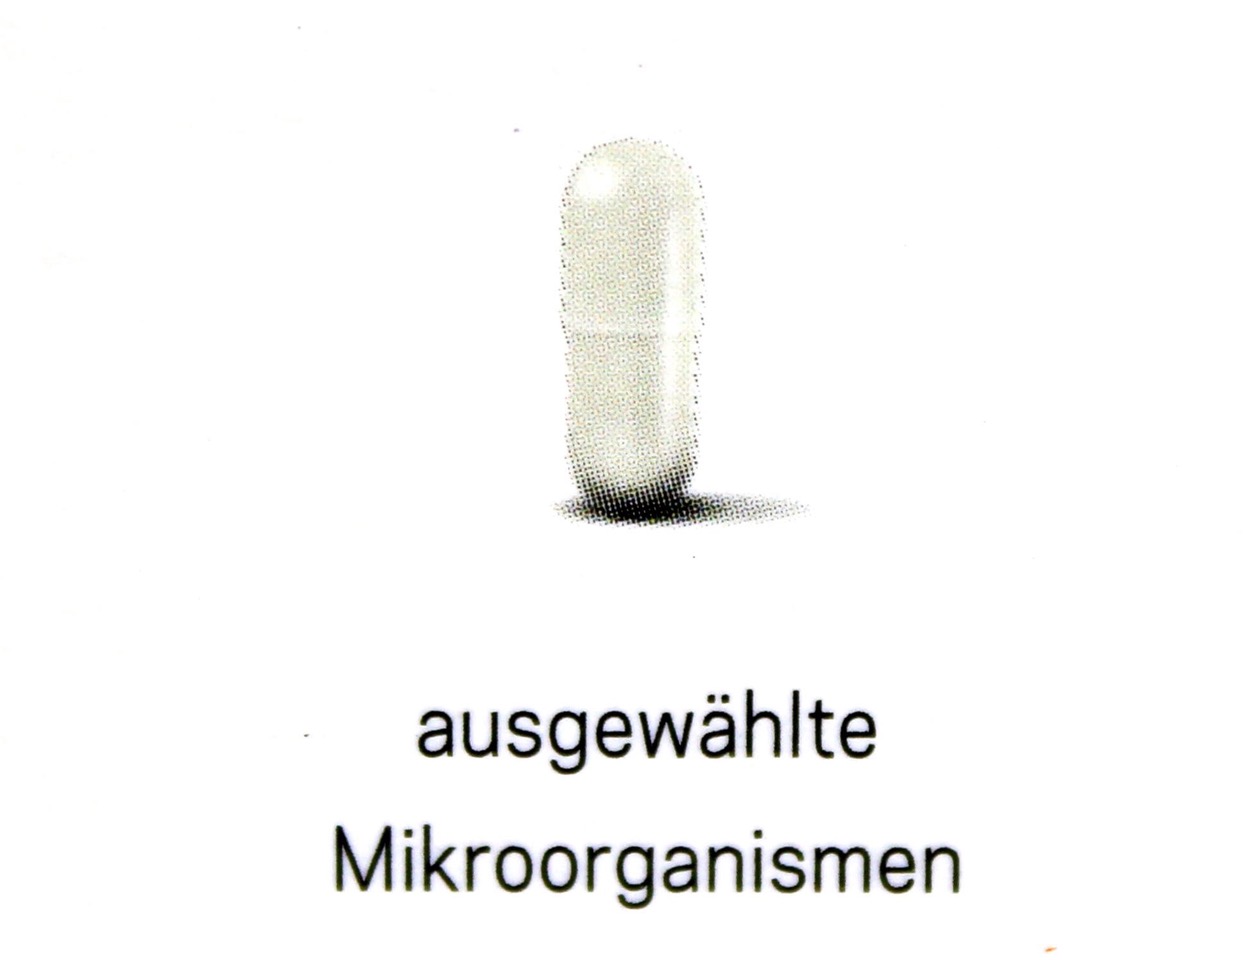 Mirkoorganismen